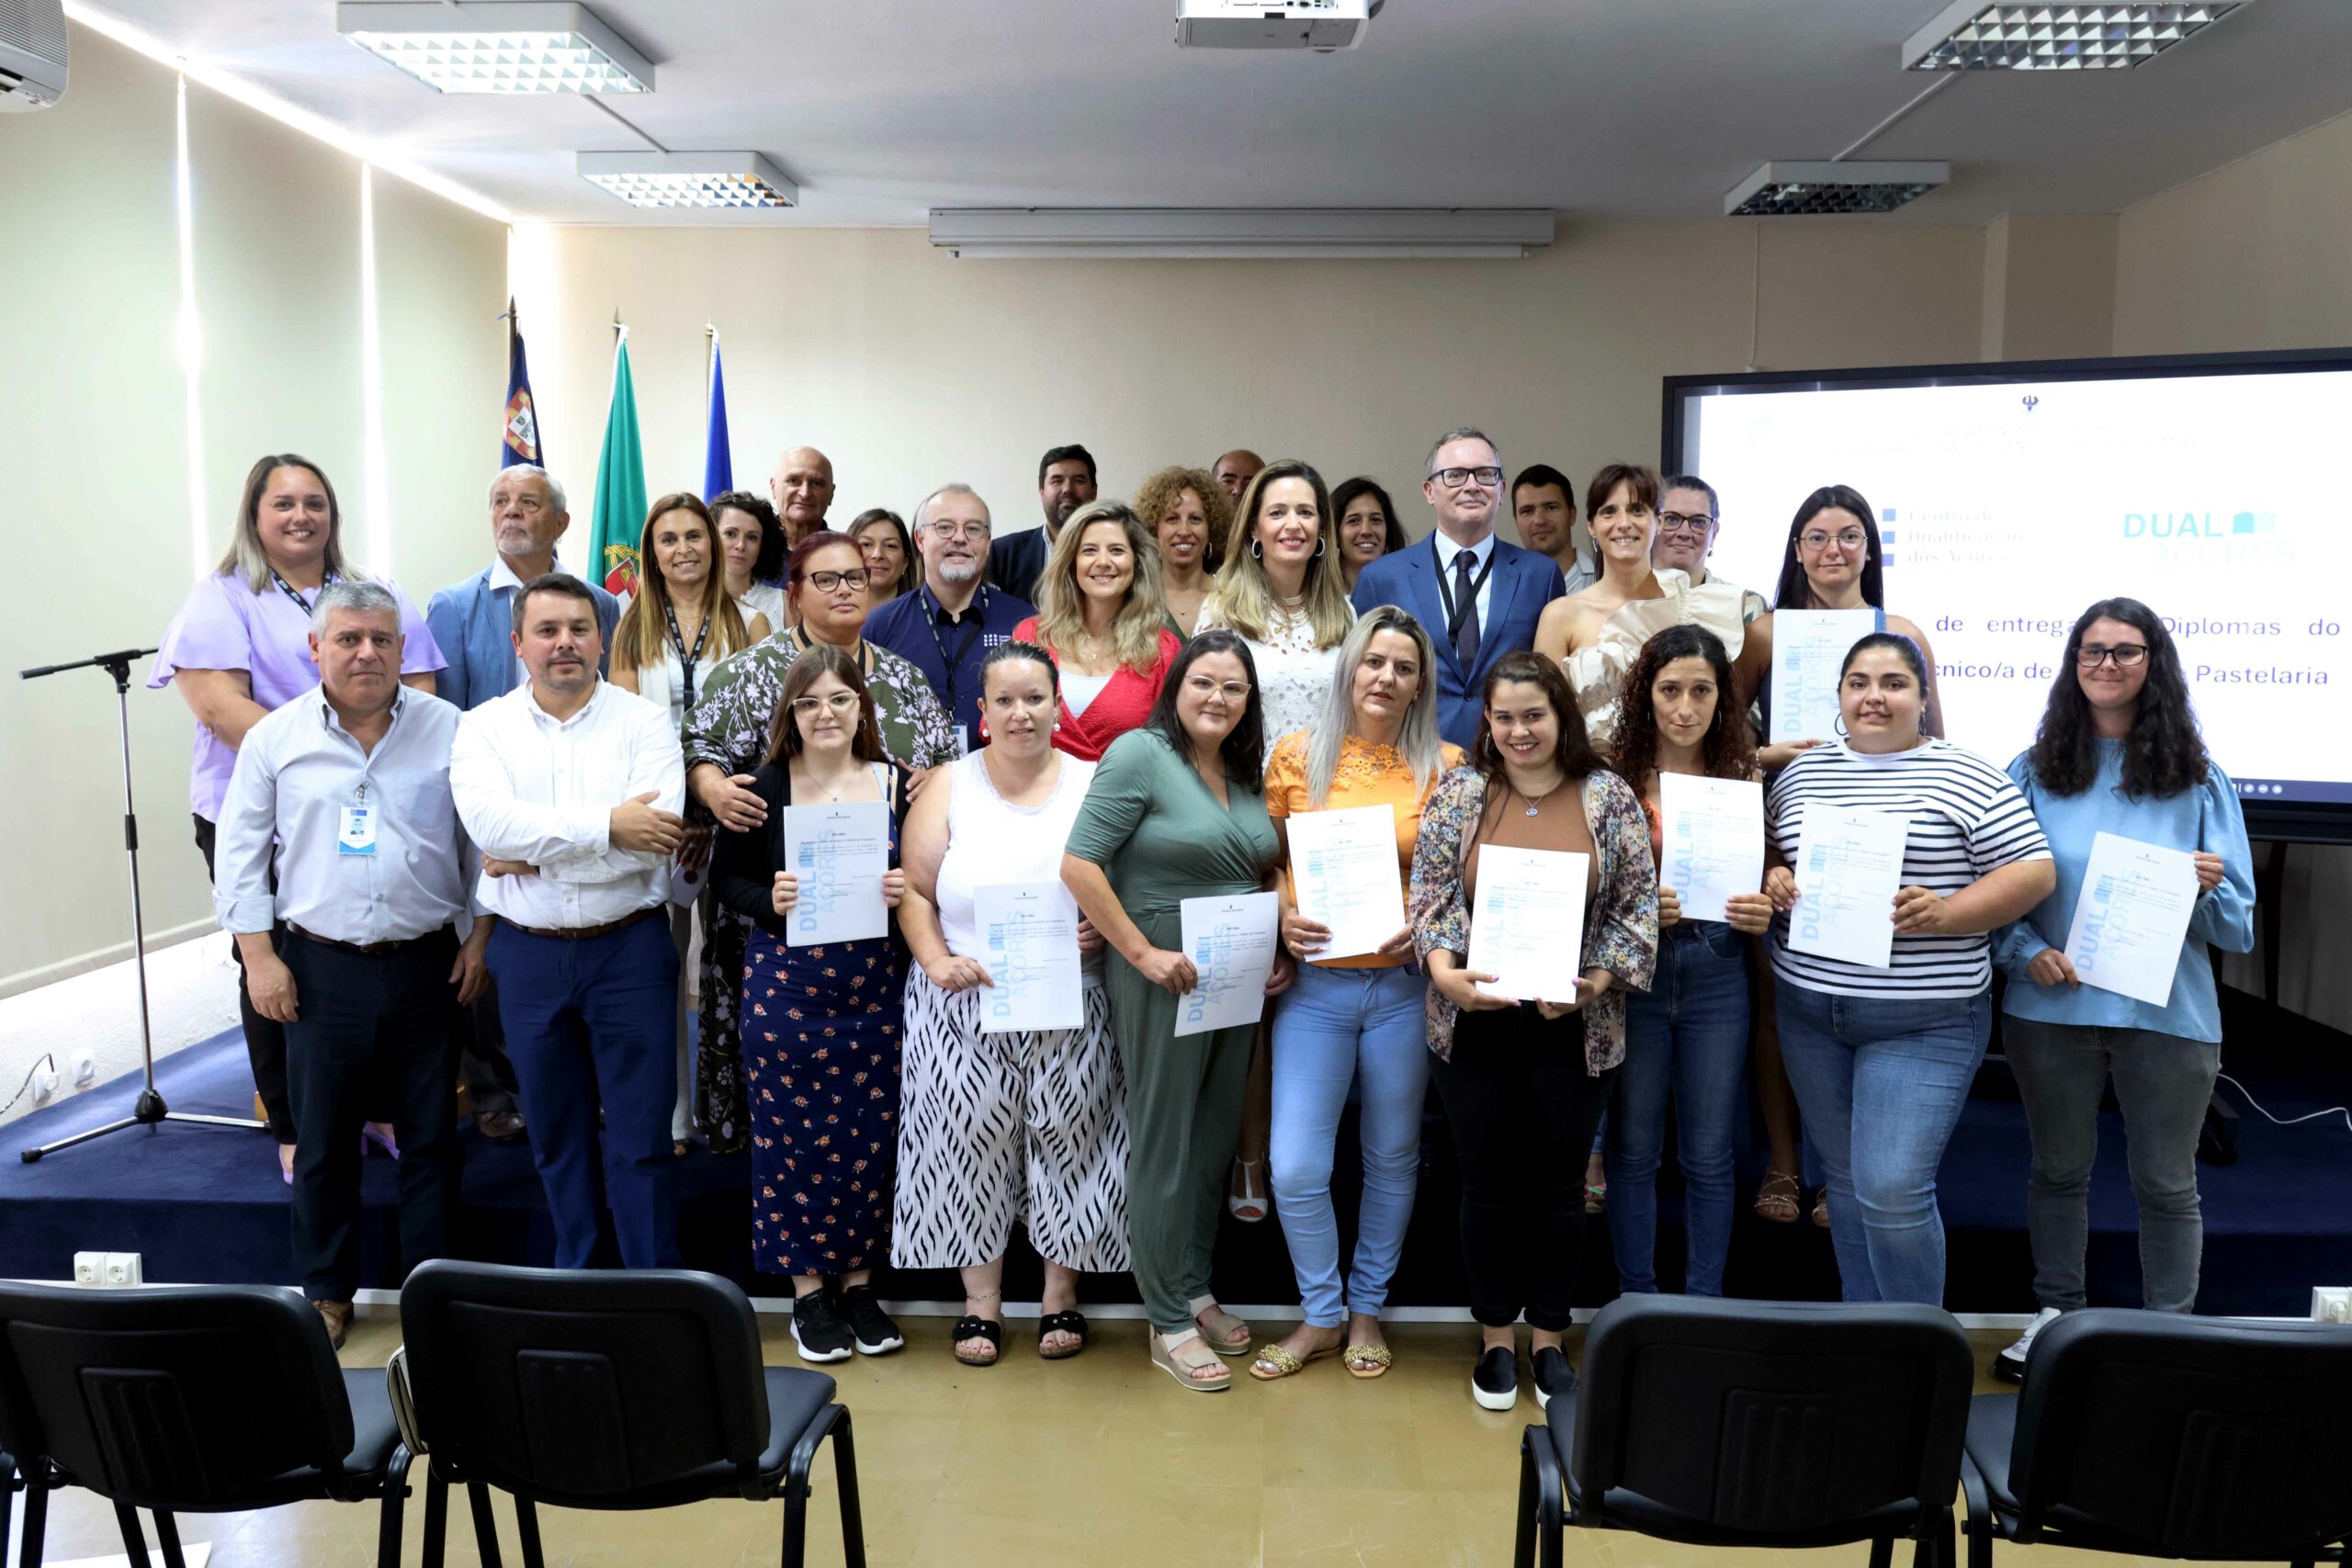 Implementação do Ensino Dual é “passo importante” para adequar Ensino e Formação Profissional à realidade dos Açores